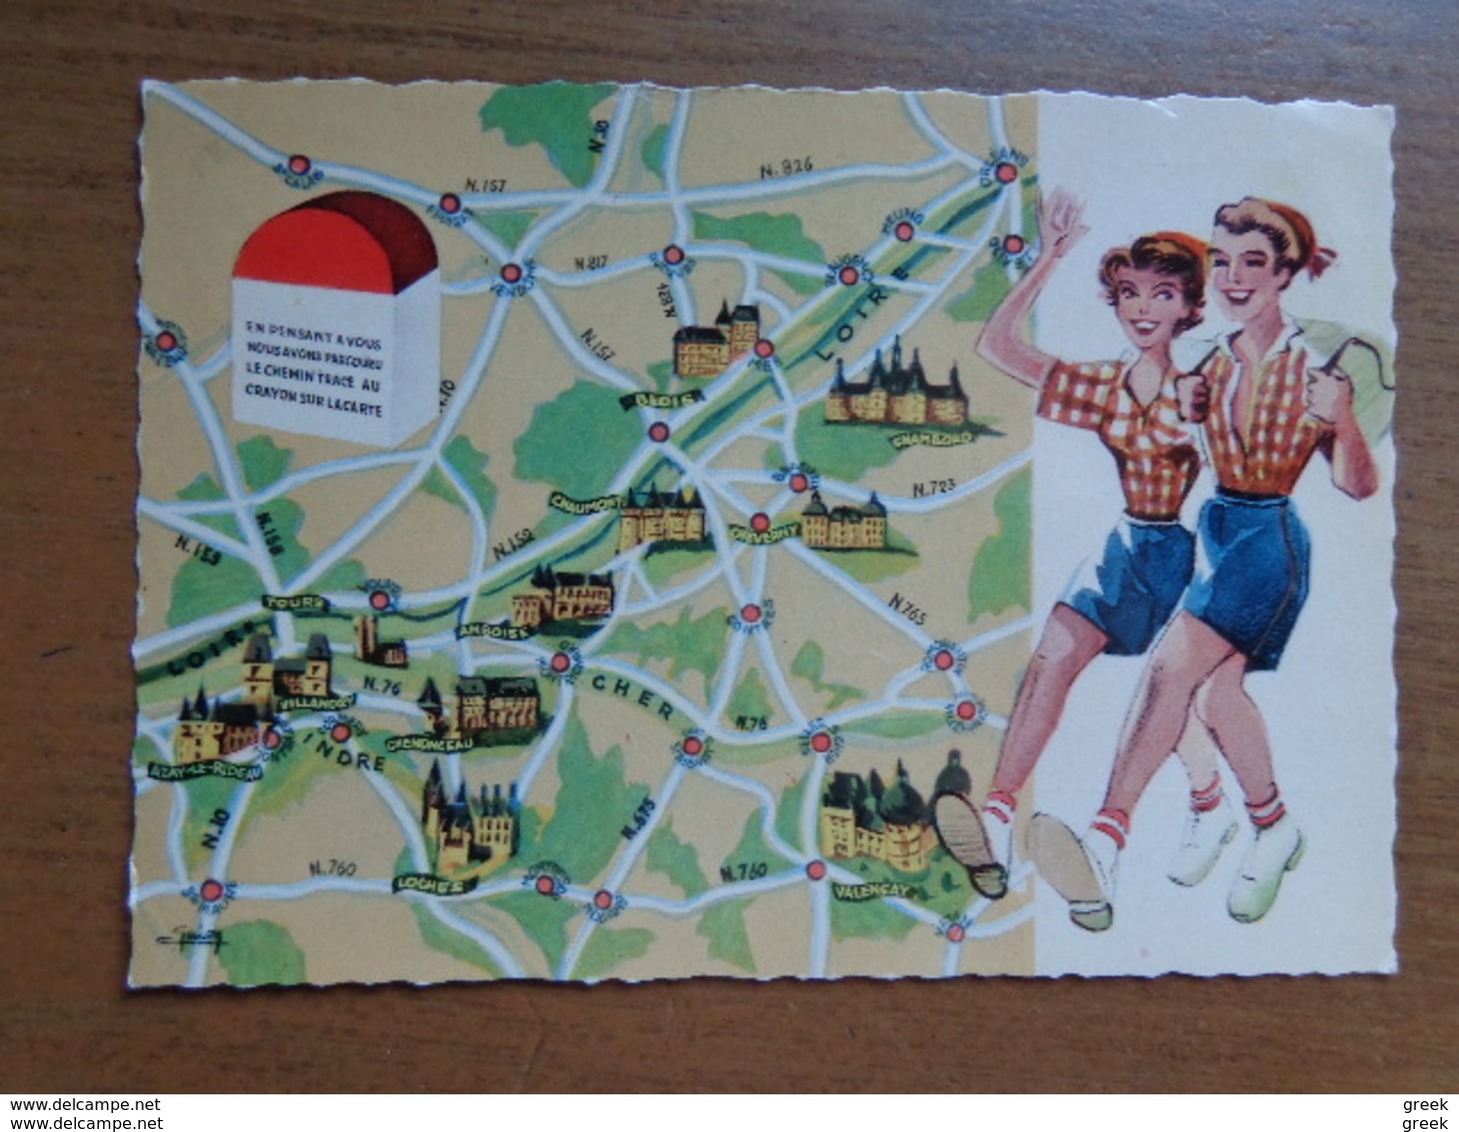 Doos postkaarten (+/- 3kg500) allerlei landen en thema's, zie enkele foto's